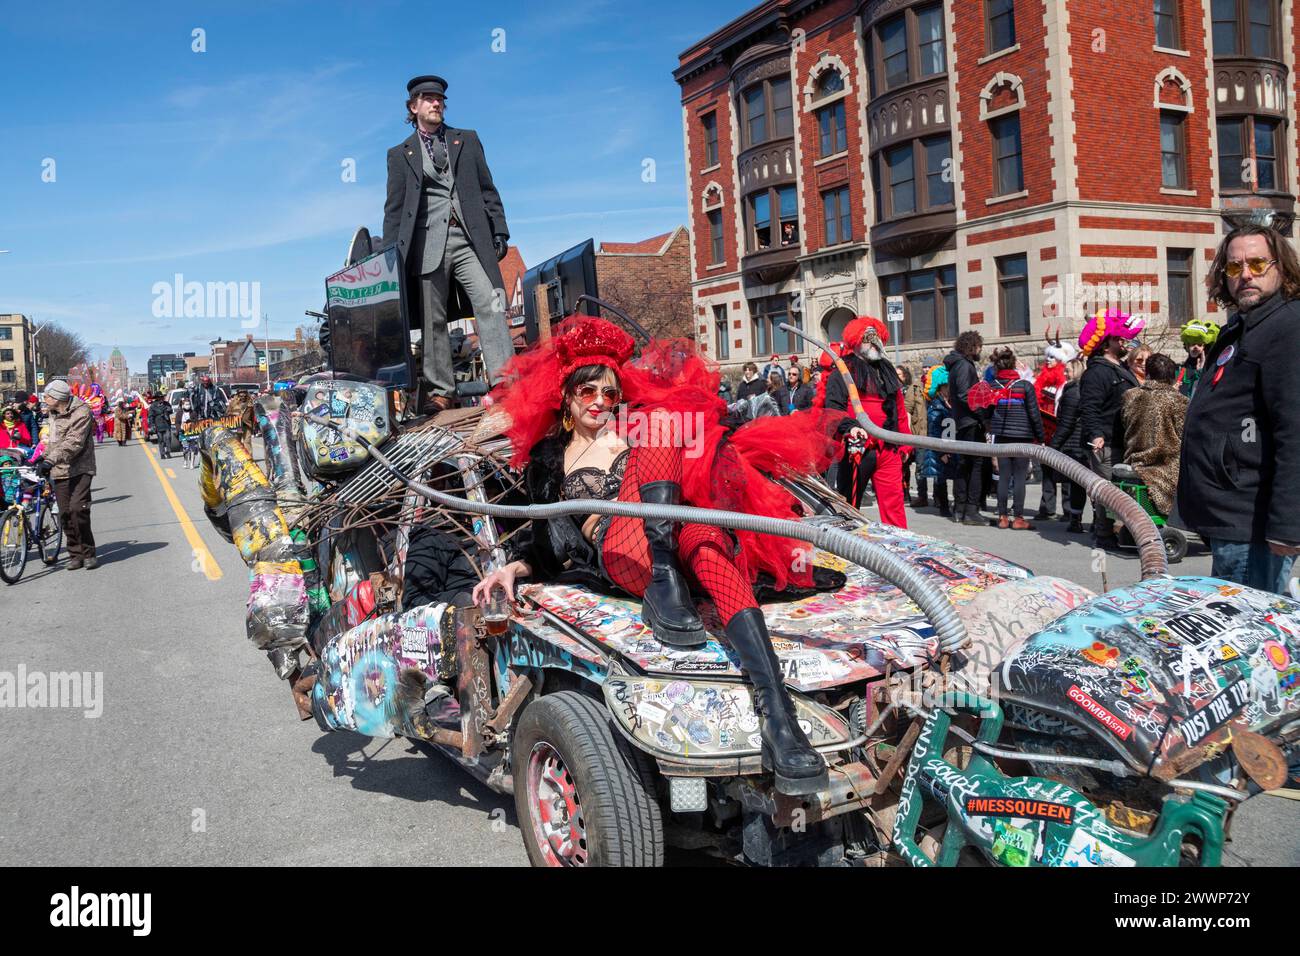 Detroit, Michigan - La Marche du Nain rouge célèbre la venue du printemps et bannit l'Nain rouge (Red Dwarf) à partir de la ville. Légende datant de Banque D'Images